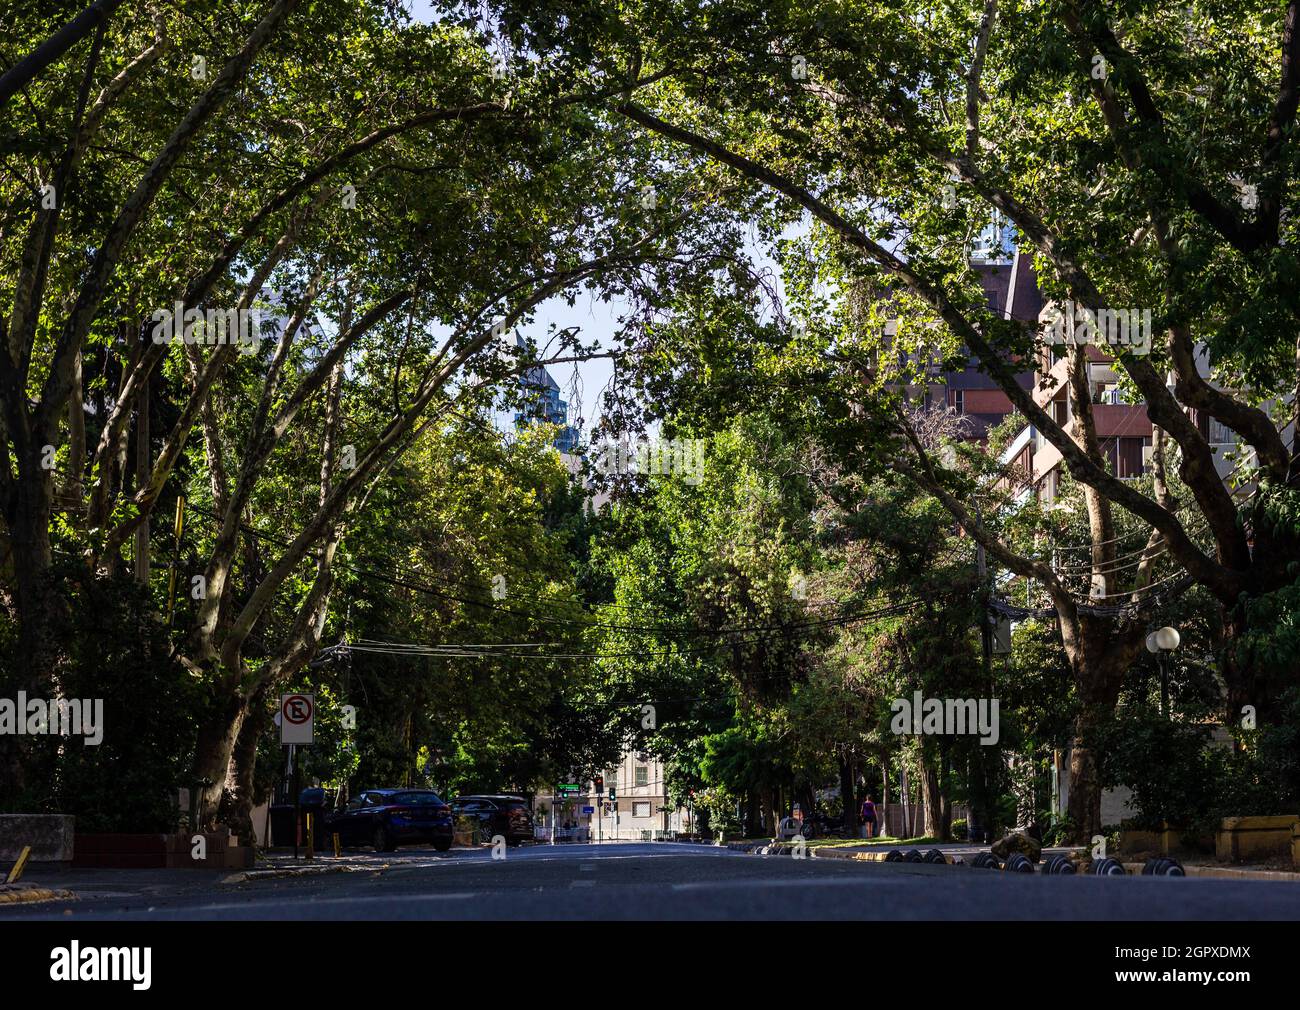 Route vide couverte d'arbres feuillus dans la zone urbaine de Santiago, Chili. Pas de circulation en ville pendant le concept de pandémie Banque D'Images